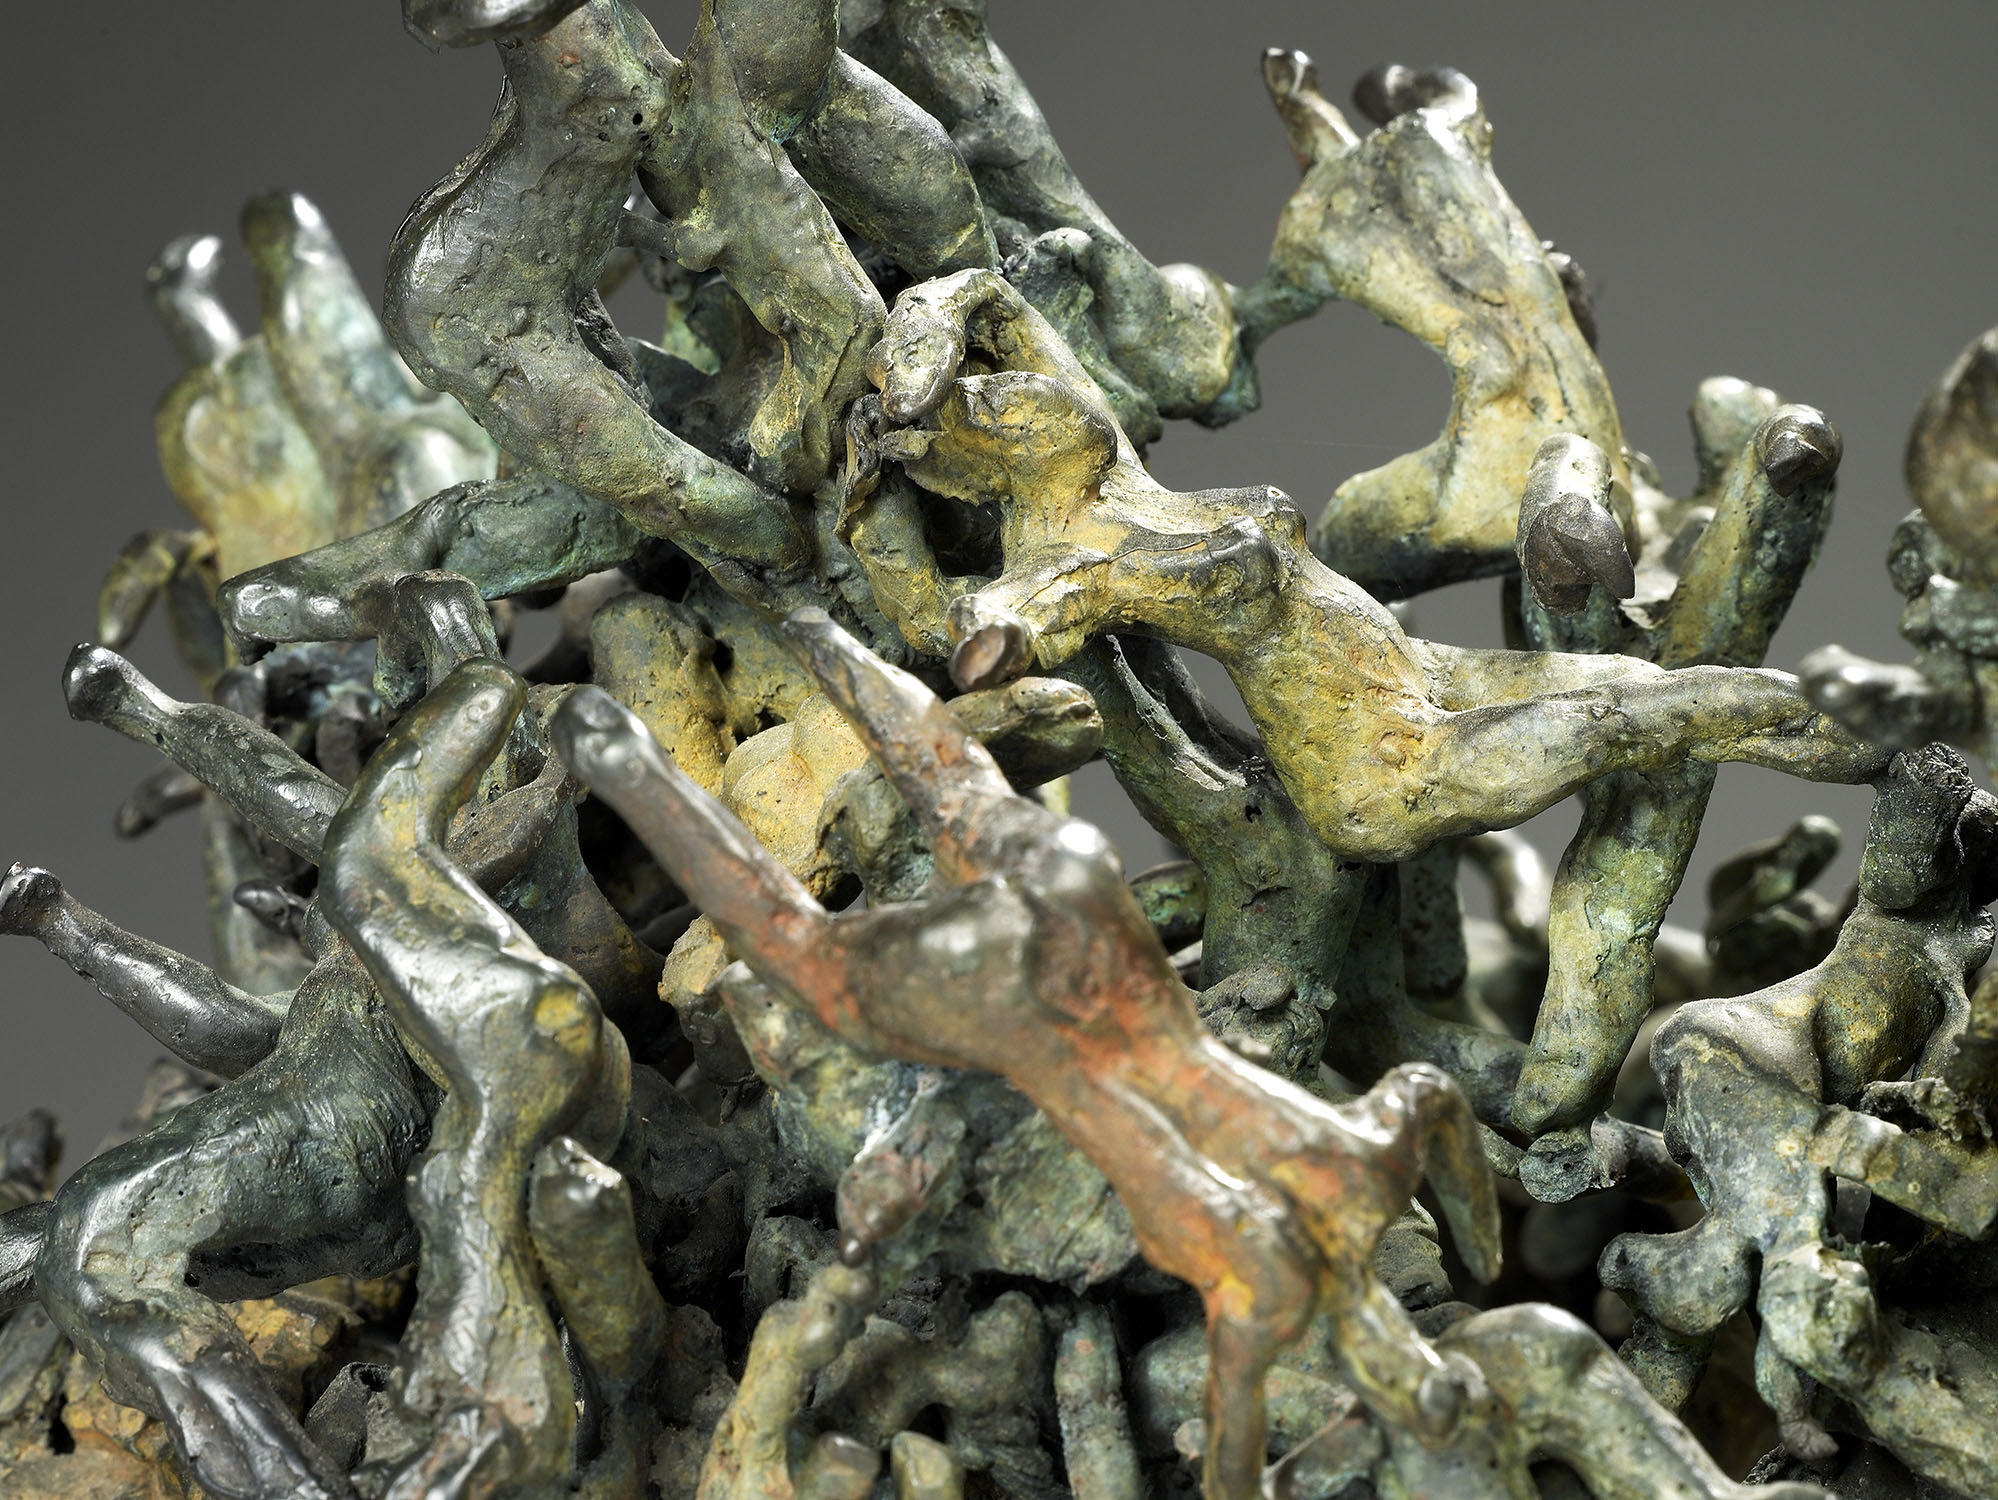 écologique désastre nature bronze sculpture art explosion culture